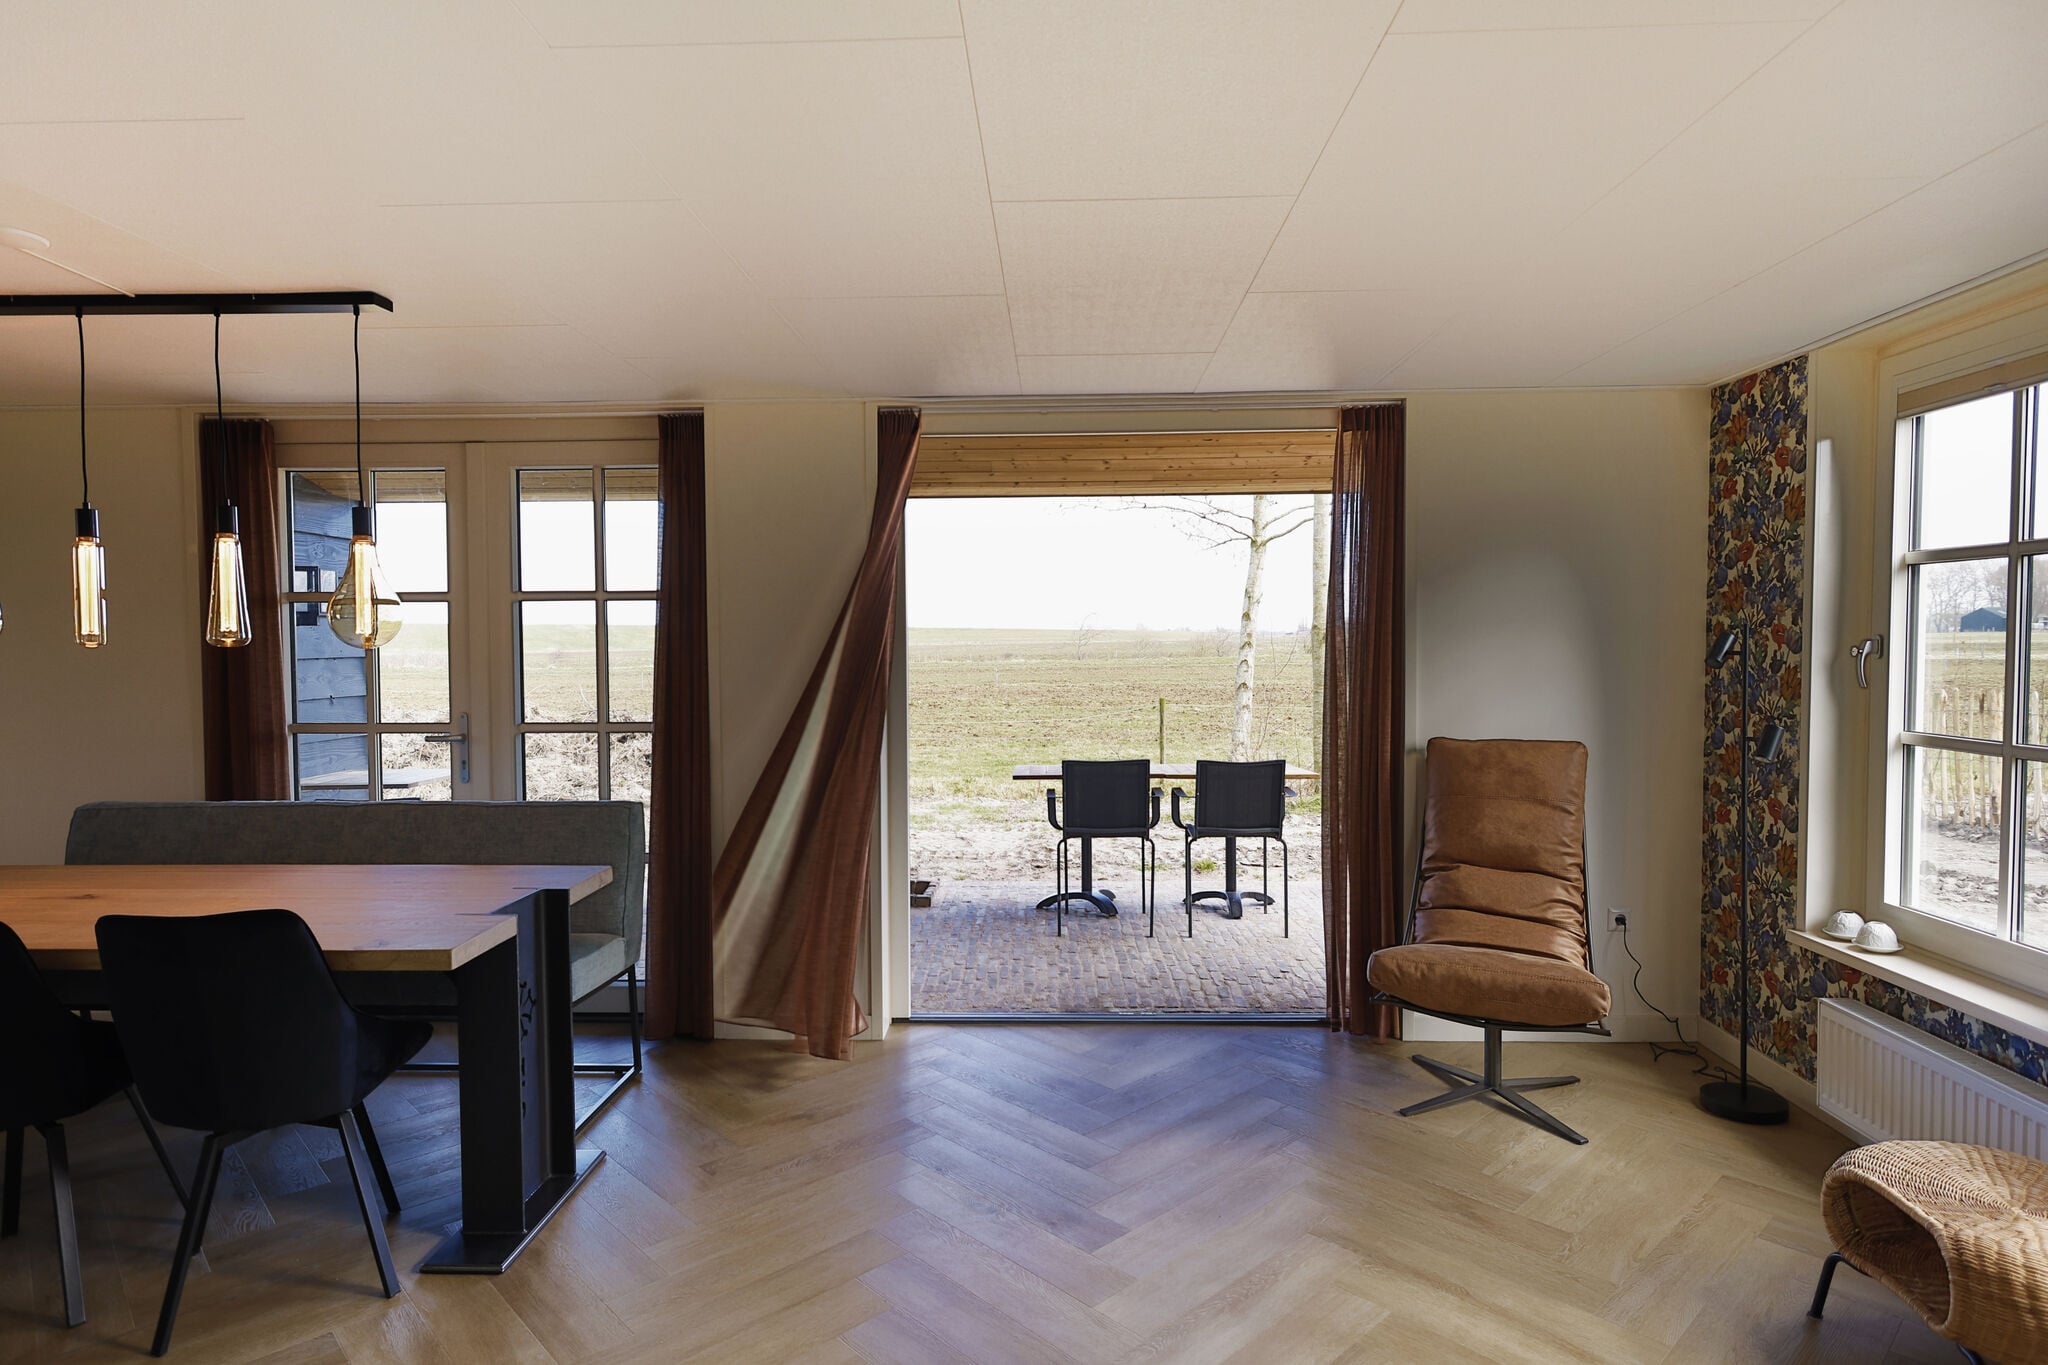 Comfortabele villa in Wieringer stijl, vlakbij Waddenzee